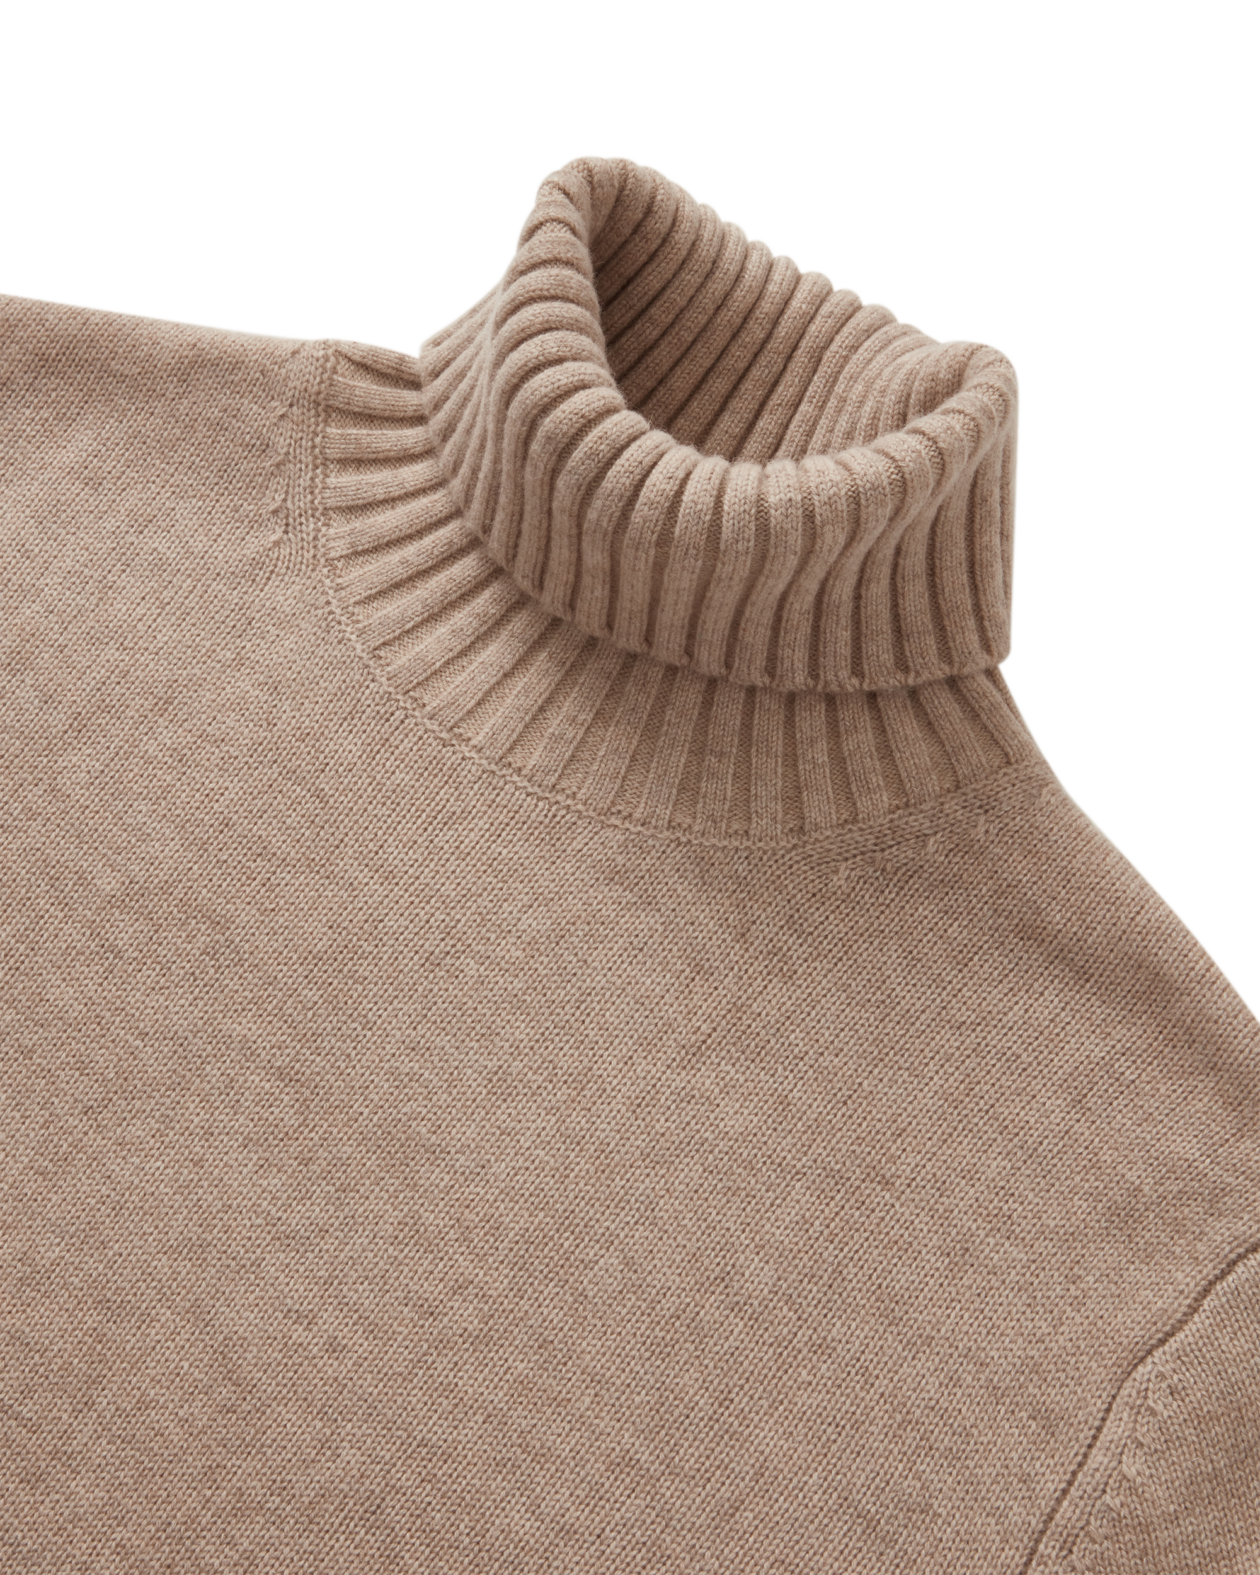 7 Gauge Turtleneck Cashmere Sweater Sand